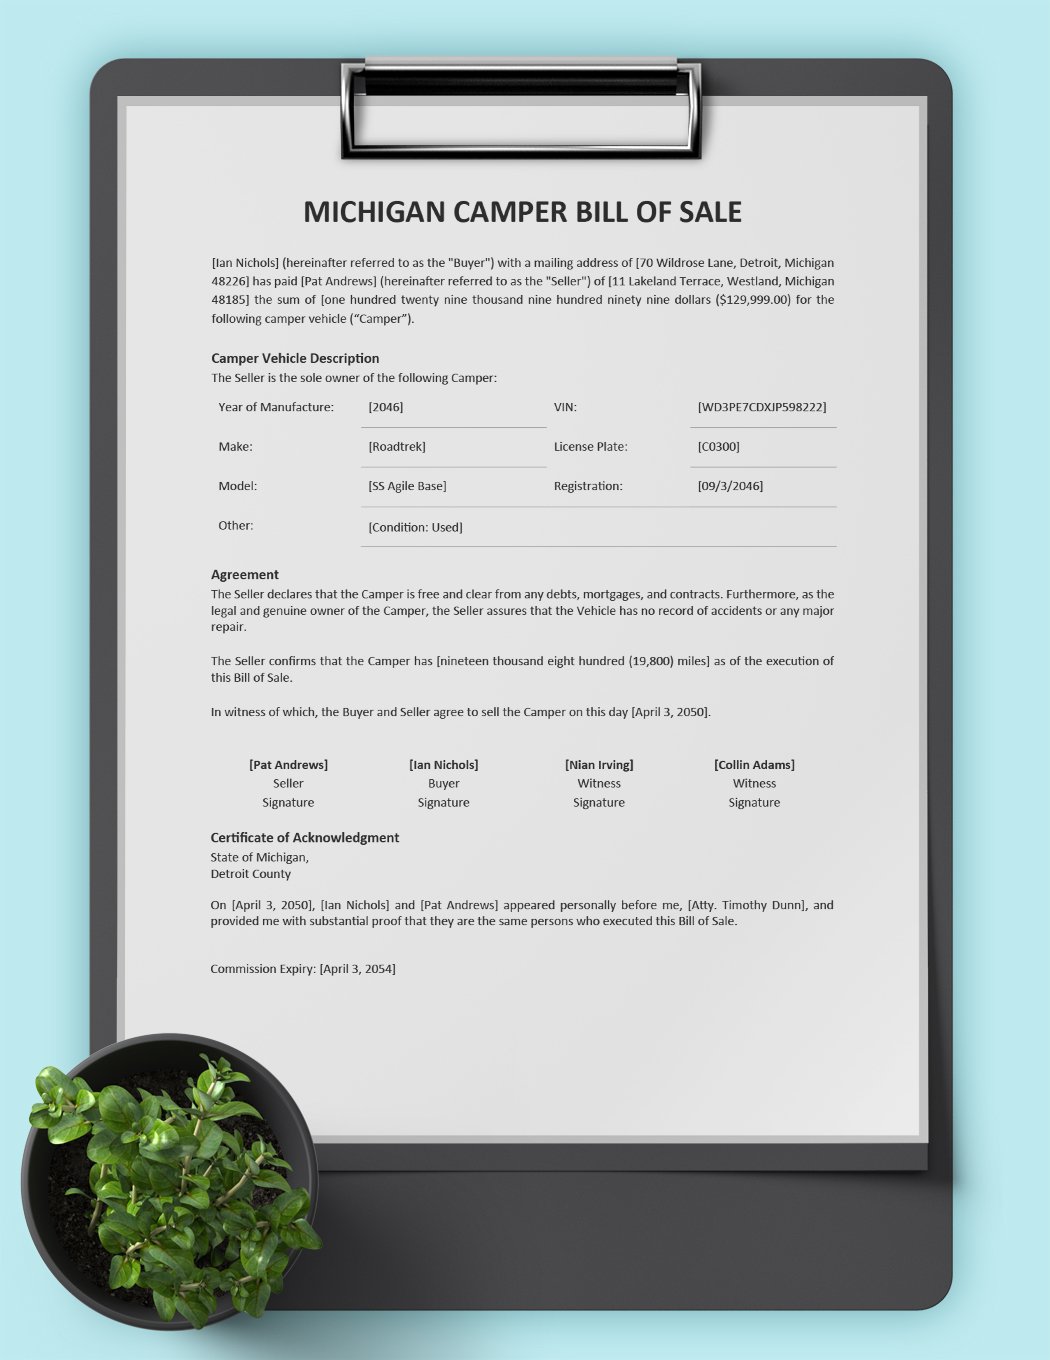 Michigan Camper Bill of Sale Template